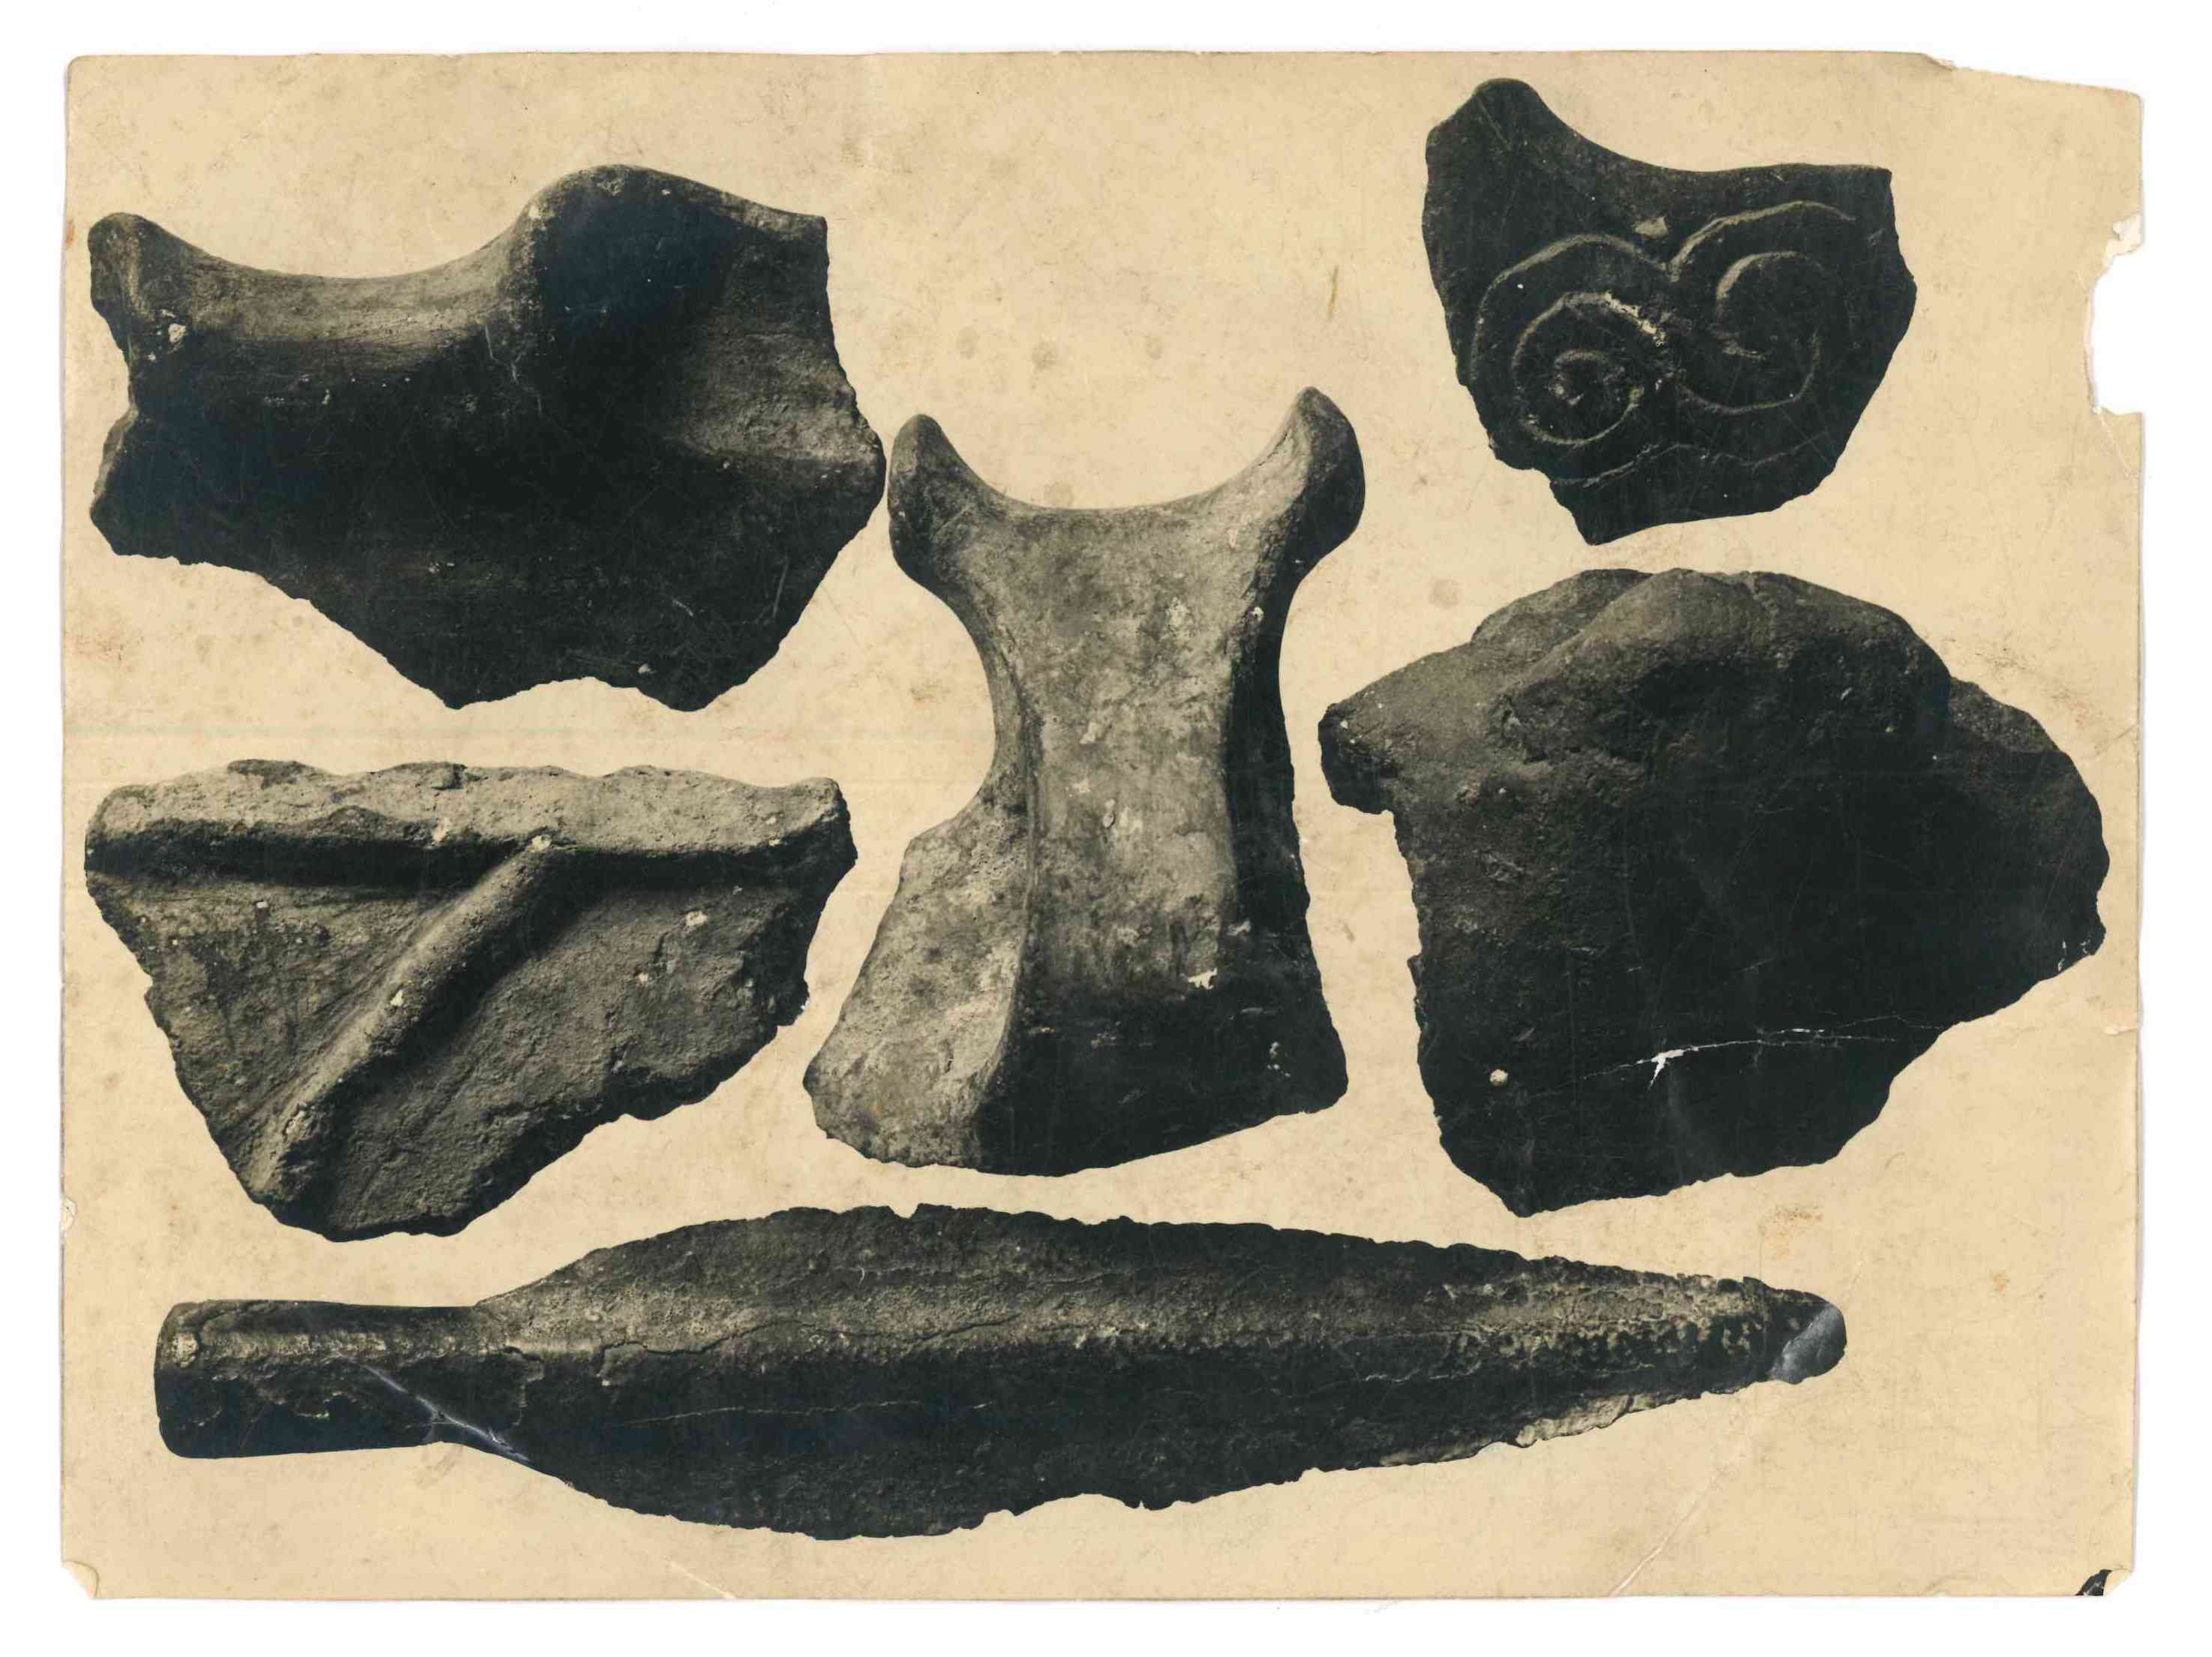 Nella didascalia sul retro della fotografia: "Ceramica e lancia dell'età del Bronzo, provenienti da scavi eseguiti a Caltrano (Collezione Guido Cibin)"